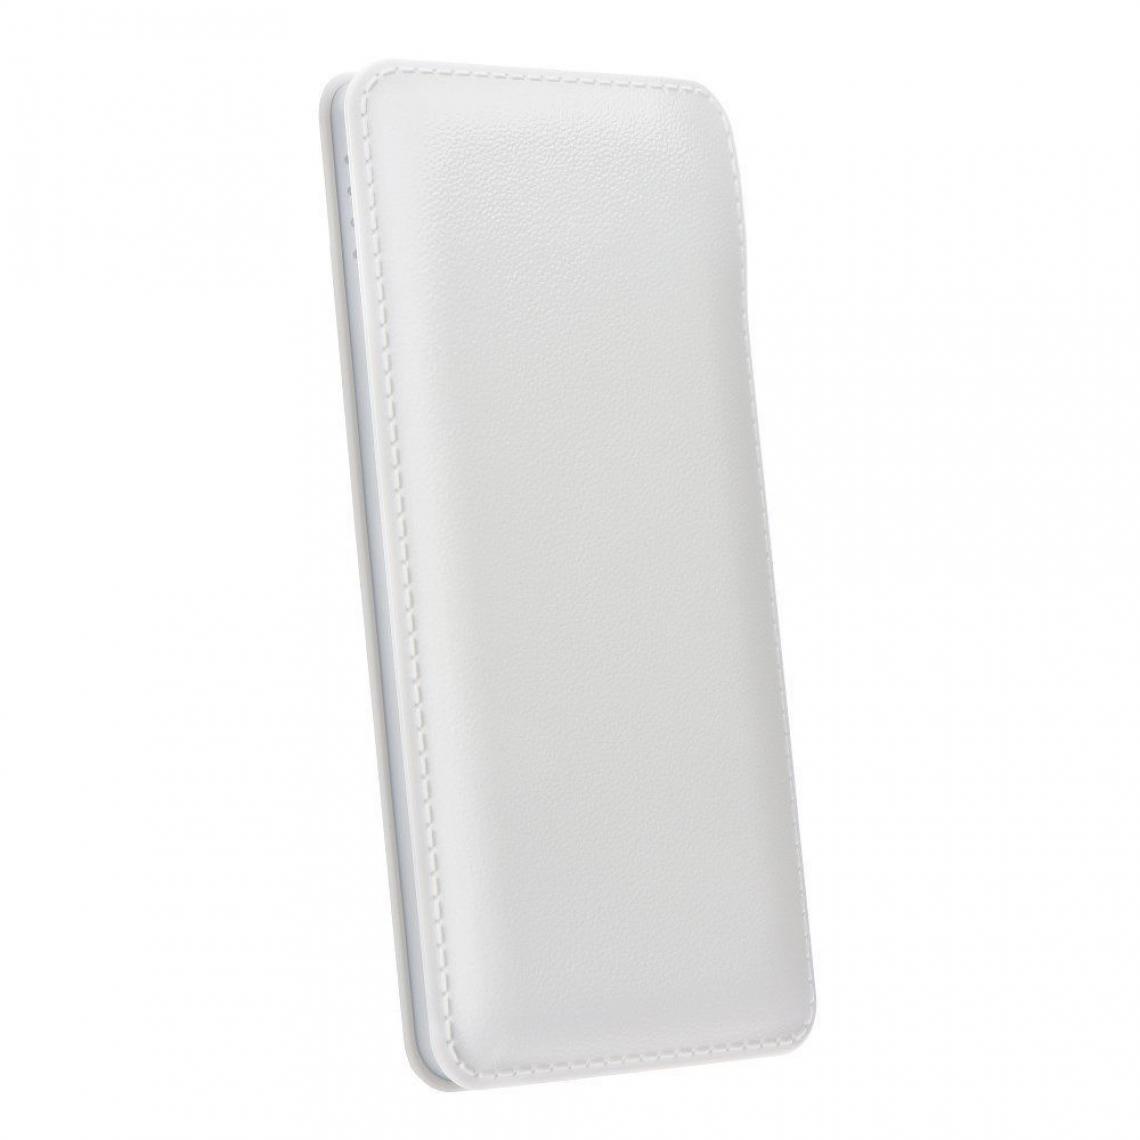 Ozzzo - Chargeur batterie externe 30000 mAh powerbank ozzzo blanc pour Samsung Galaxy M40 - Autres accessoires smartphone